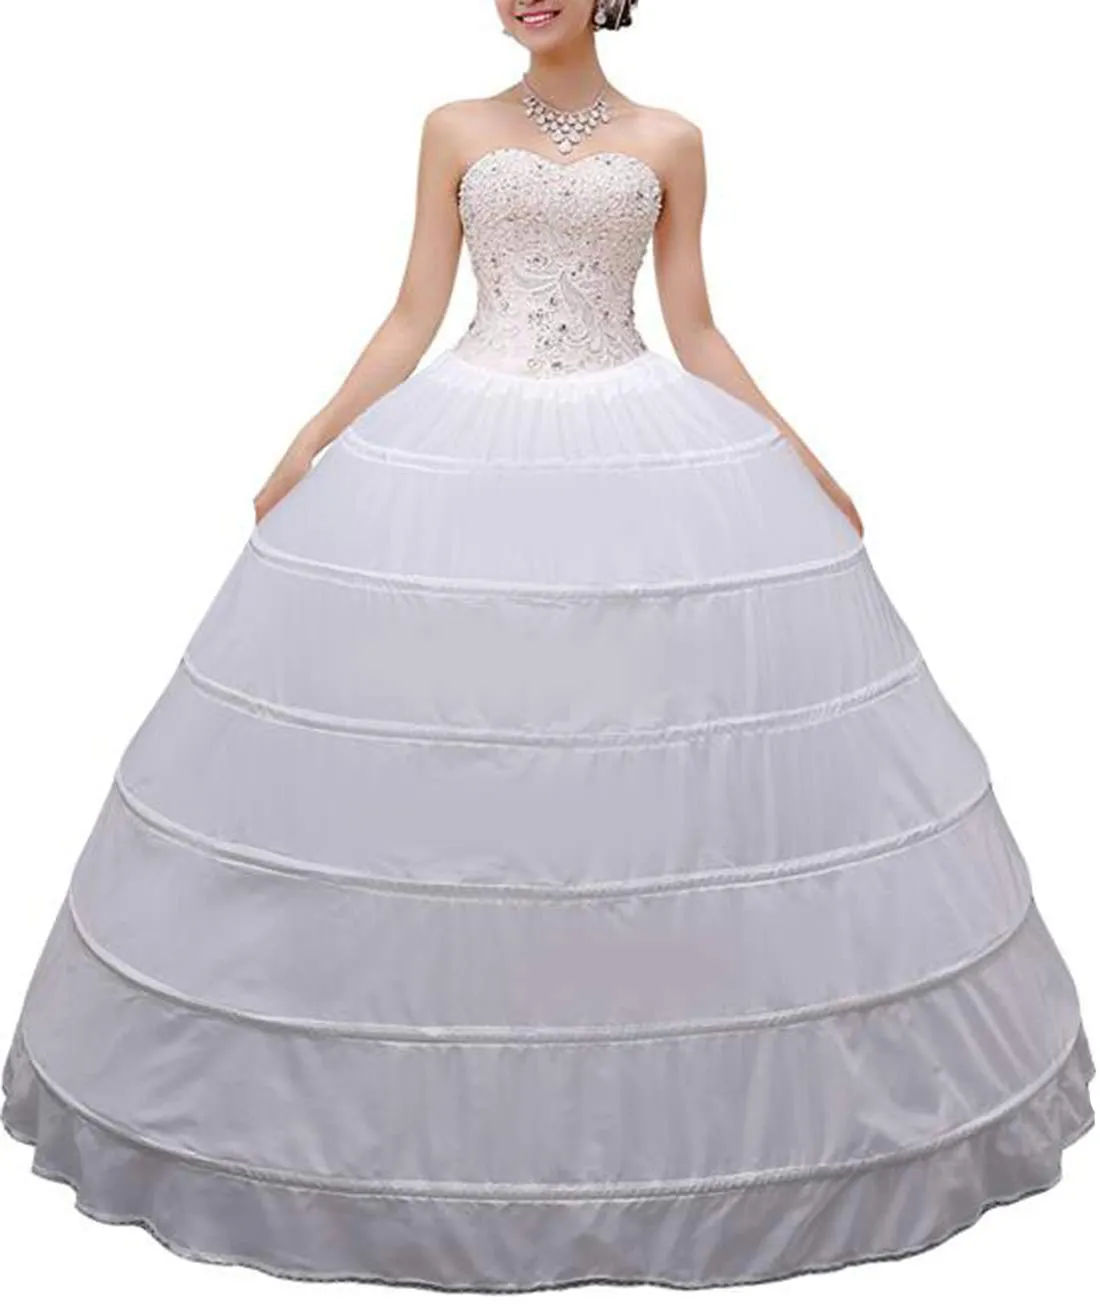 Wysokiej jakości kobiety Crinoline Petticoat Ballgown 6 Hoop Spirt Slips Długa podsekcja na ślub suknia ślubna Suknia Ball2620